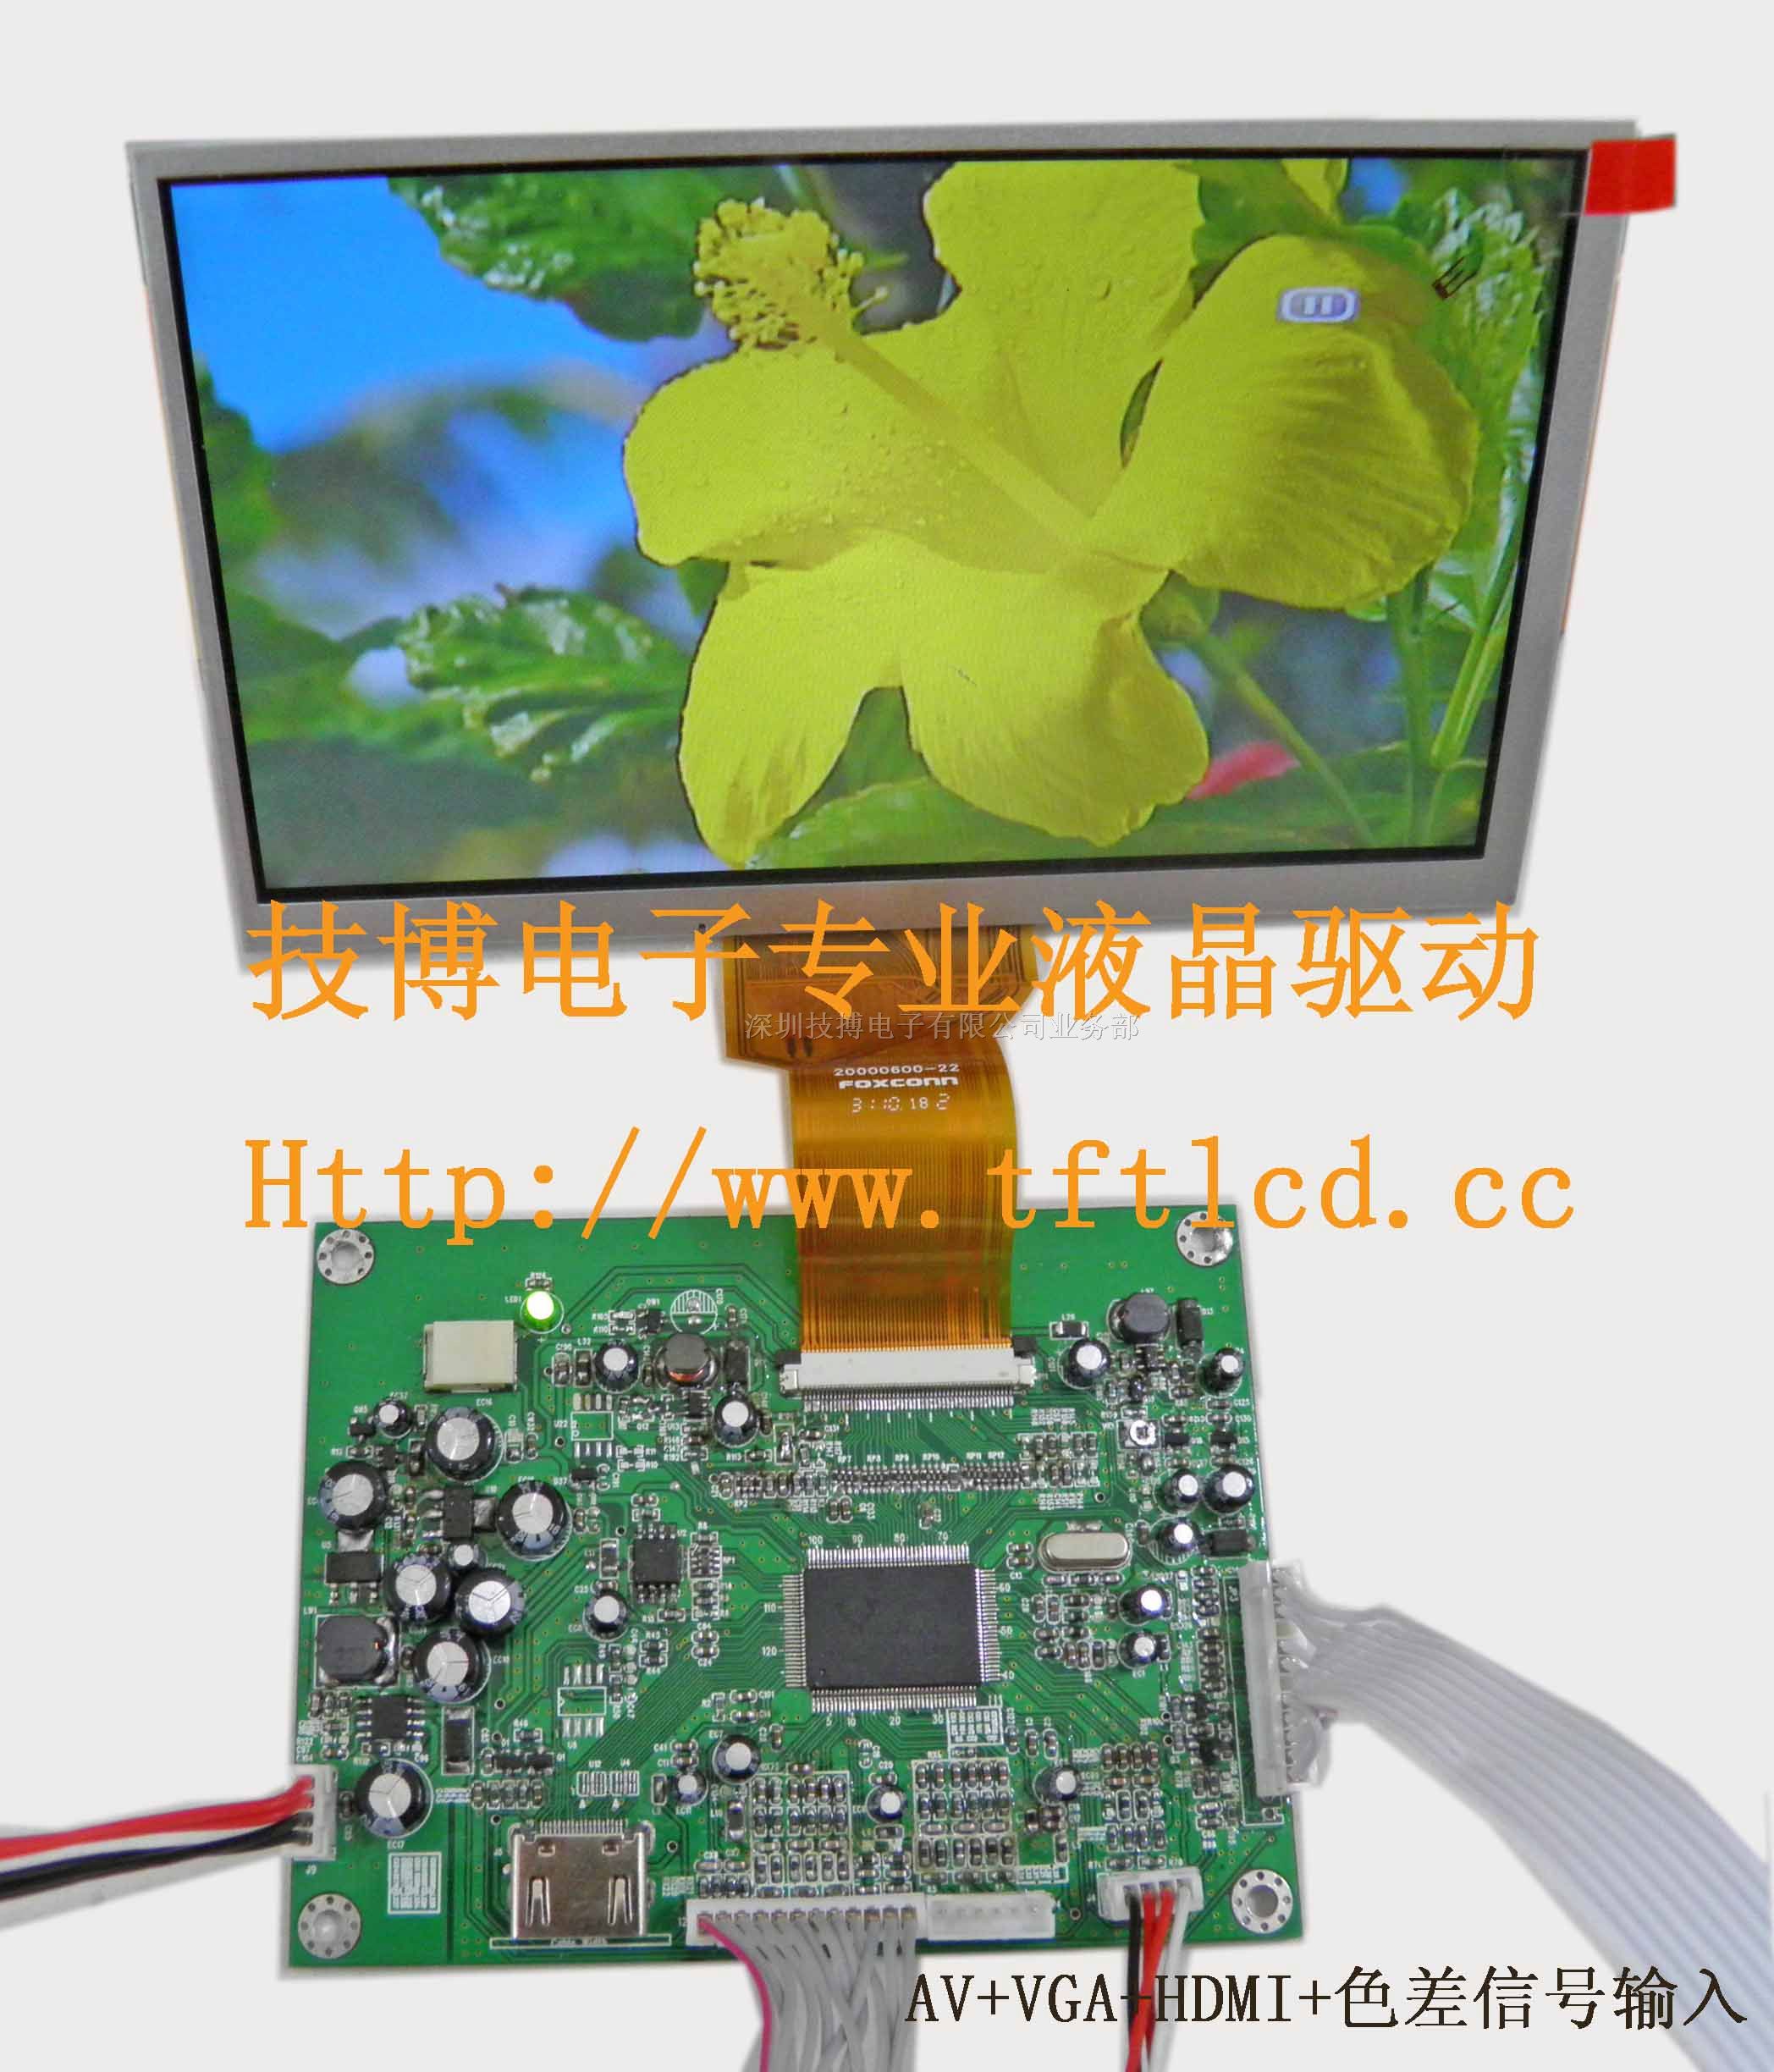 供应液晶显示模组（HDMI、VGA、*、YPBPR输入显示）